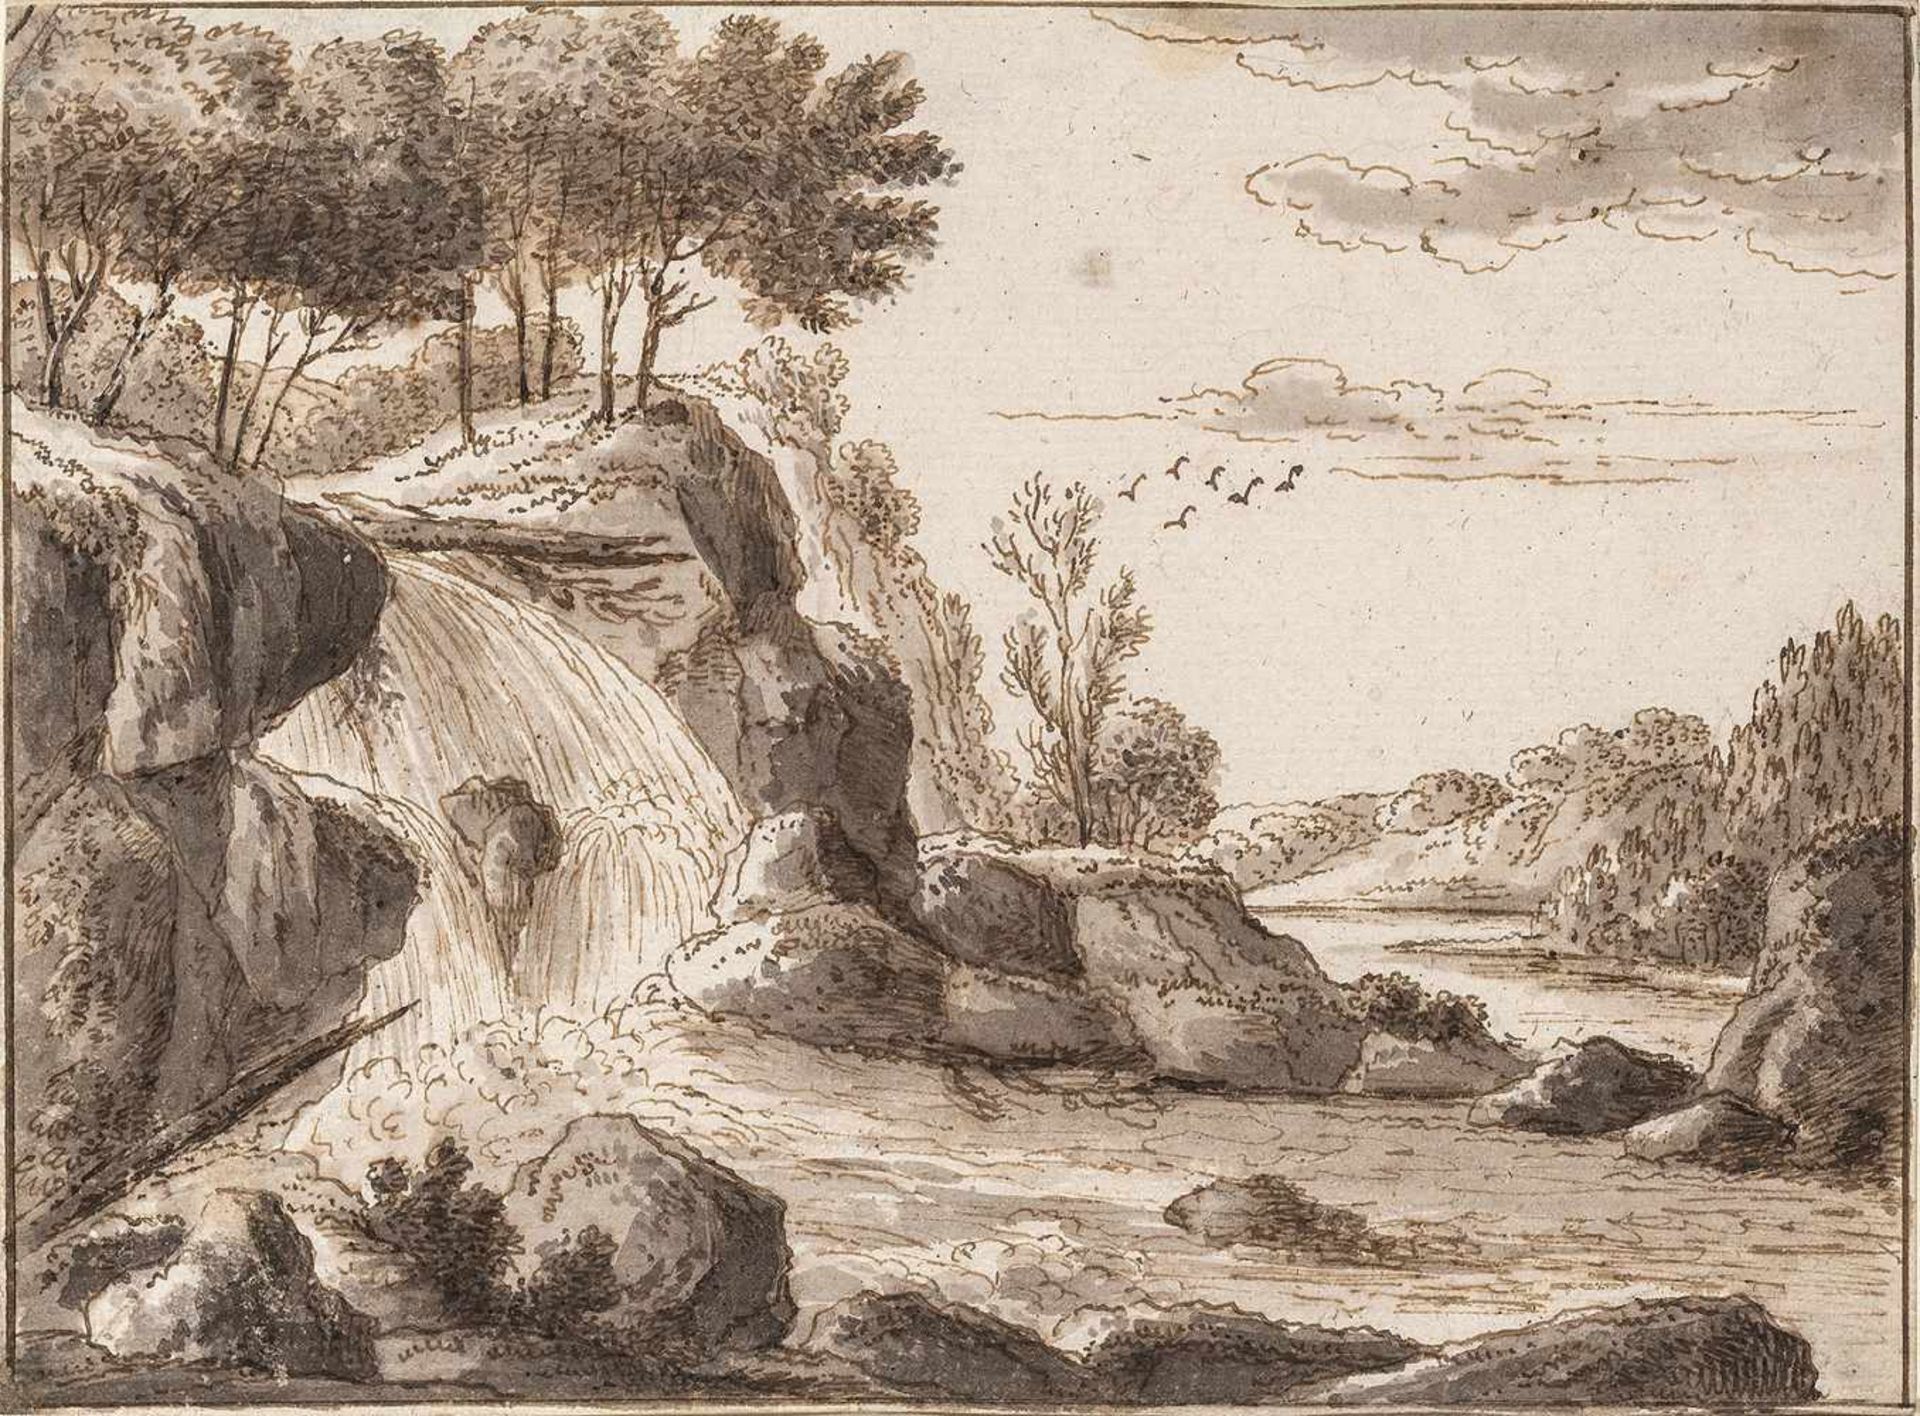 Kobell, Ferdinand(1740-1799). Landschaft mit Wasserfall. Zeichnung. Pinsel in Braun, grau laviert.